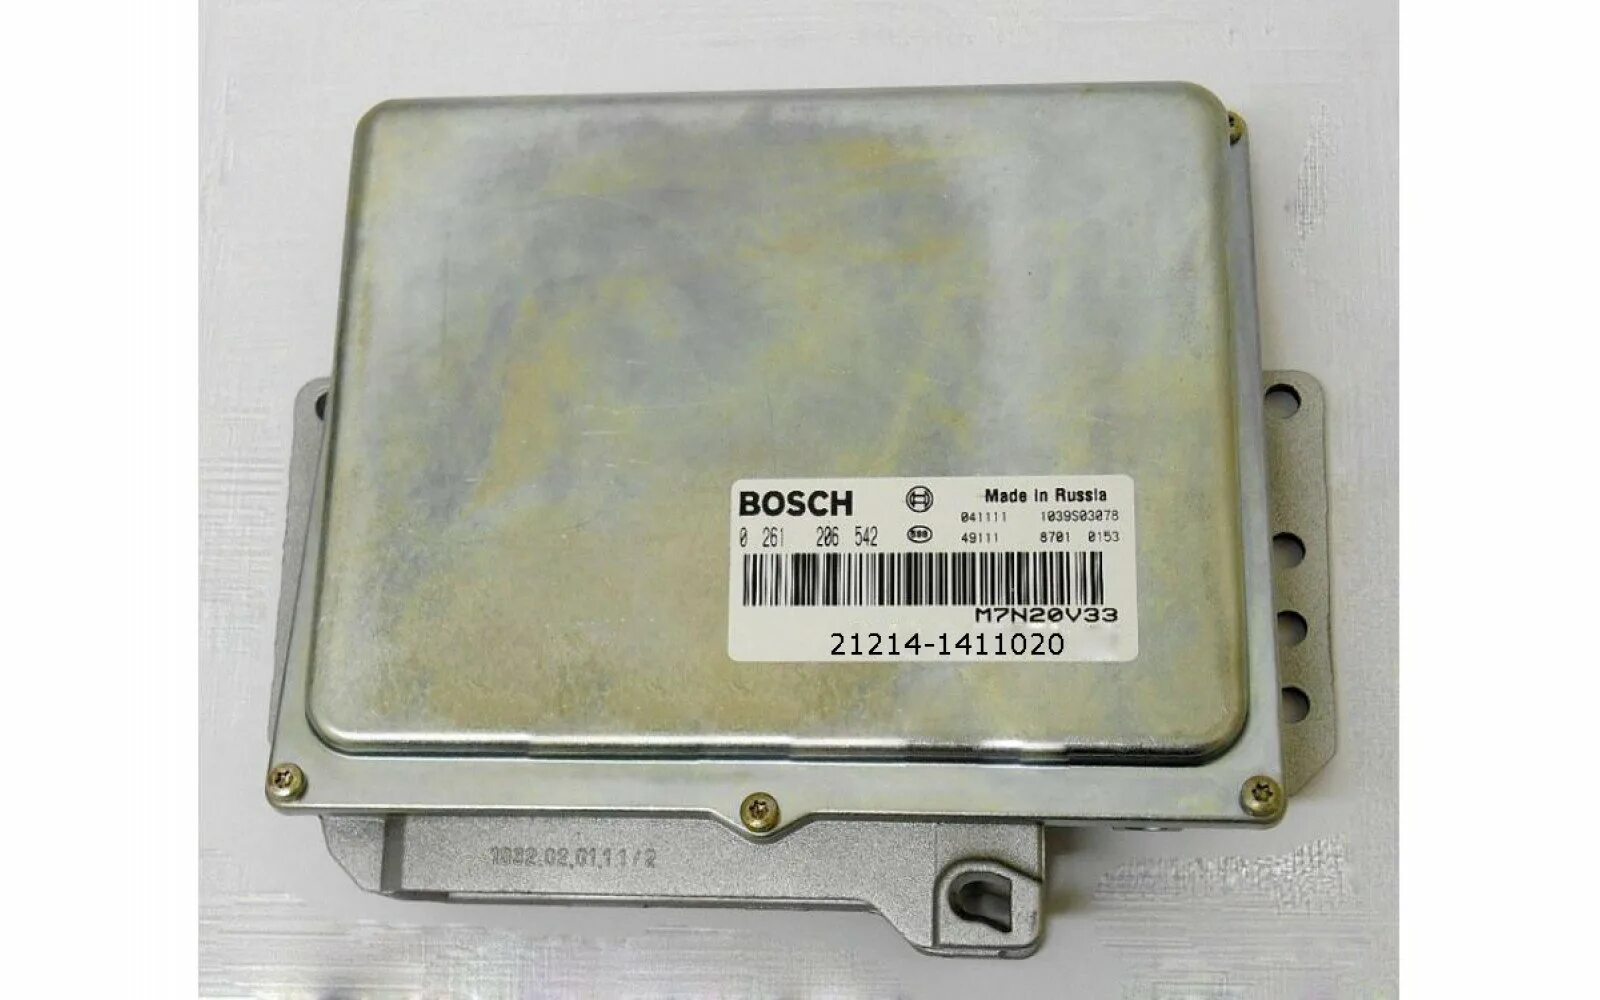 Бош 2123. Контроллер 2123-1411020-50 (Bosch). ЭБУ бош 2111-1411020. Контроллер ВАЗ-21230-1411020-50. Bosch 21214 1411020.